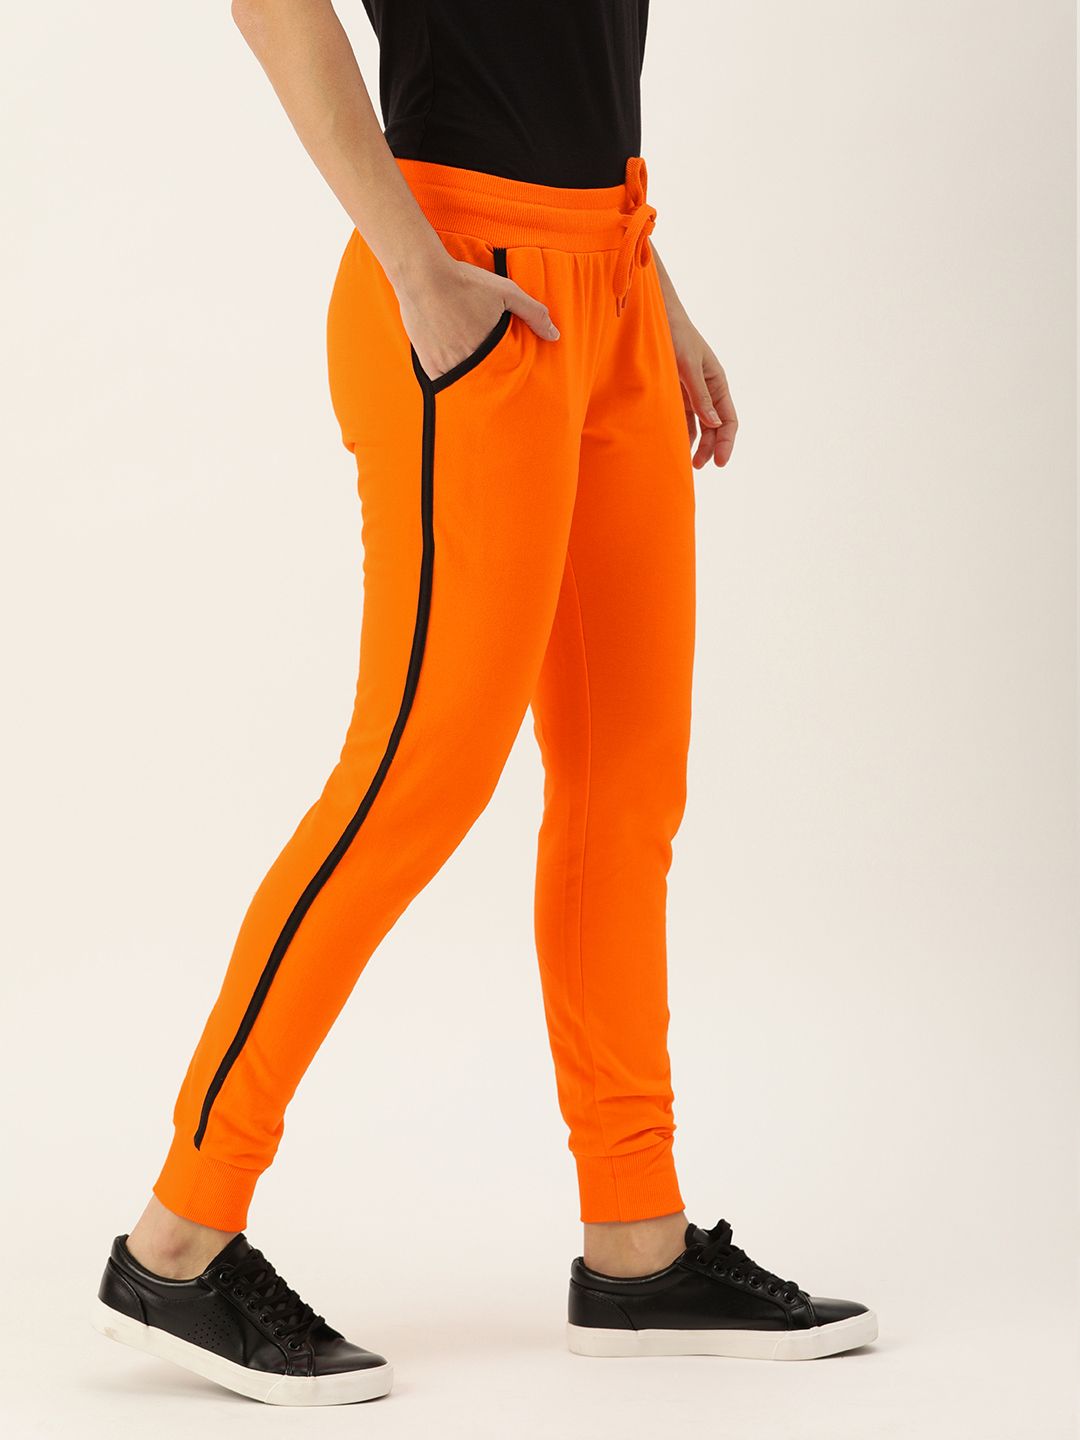 Genius18 Women Orange Solid Classic Fit Training Joggers Price in India